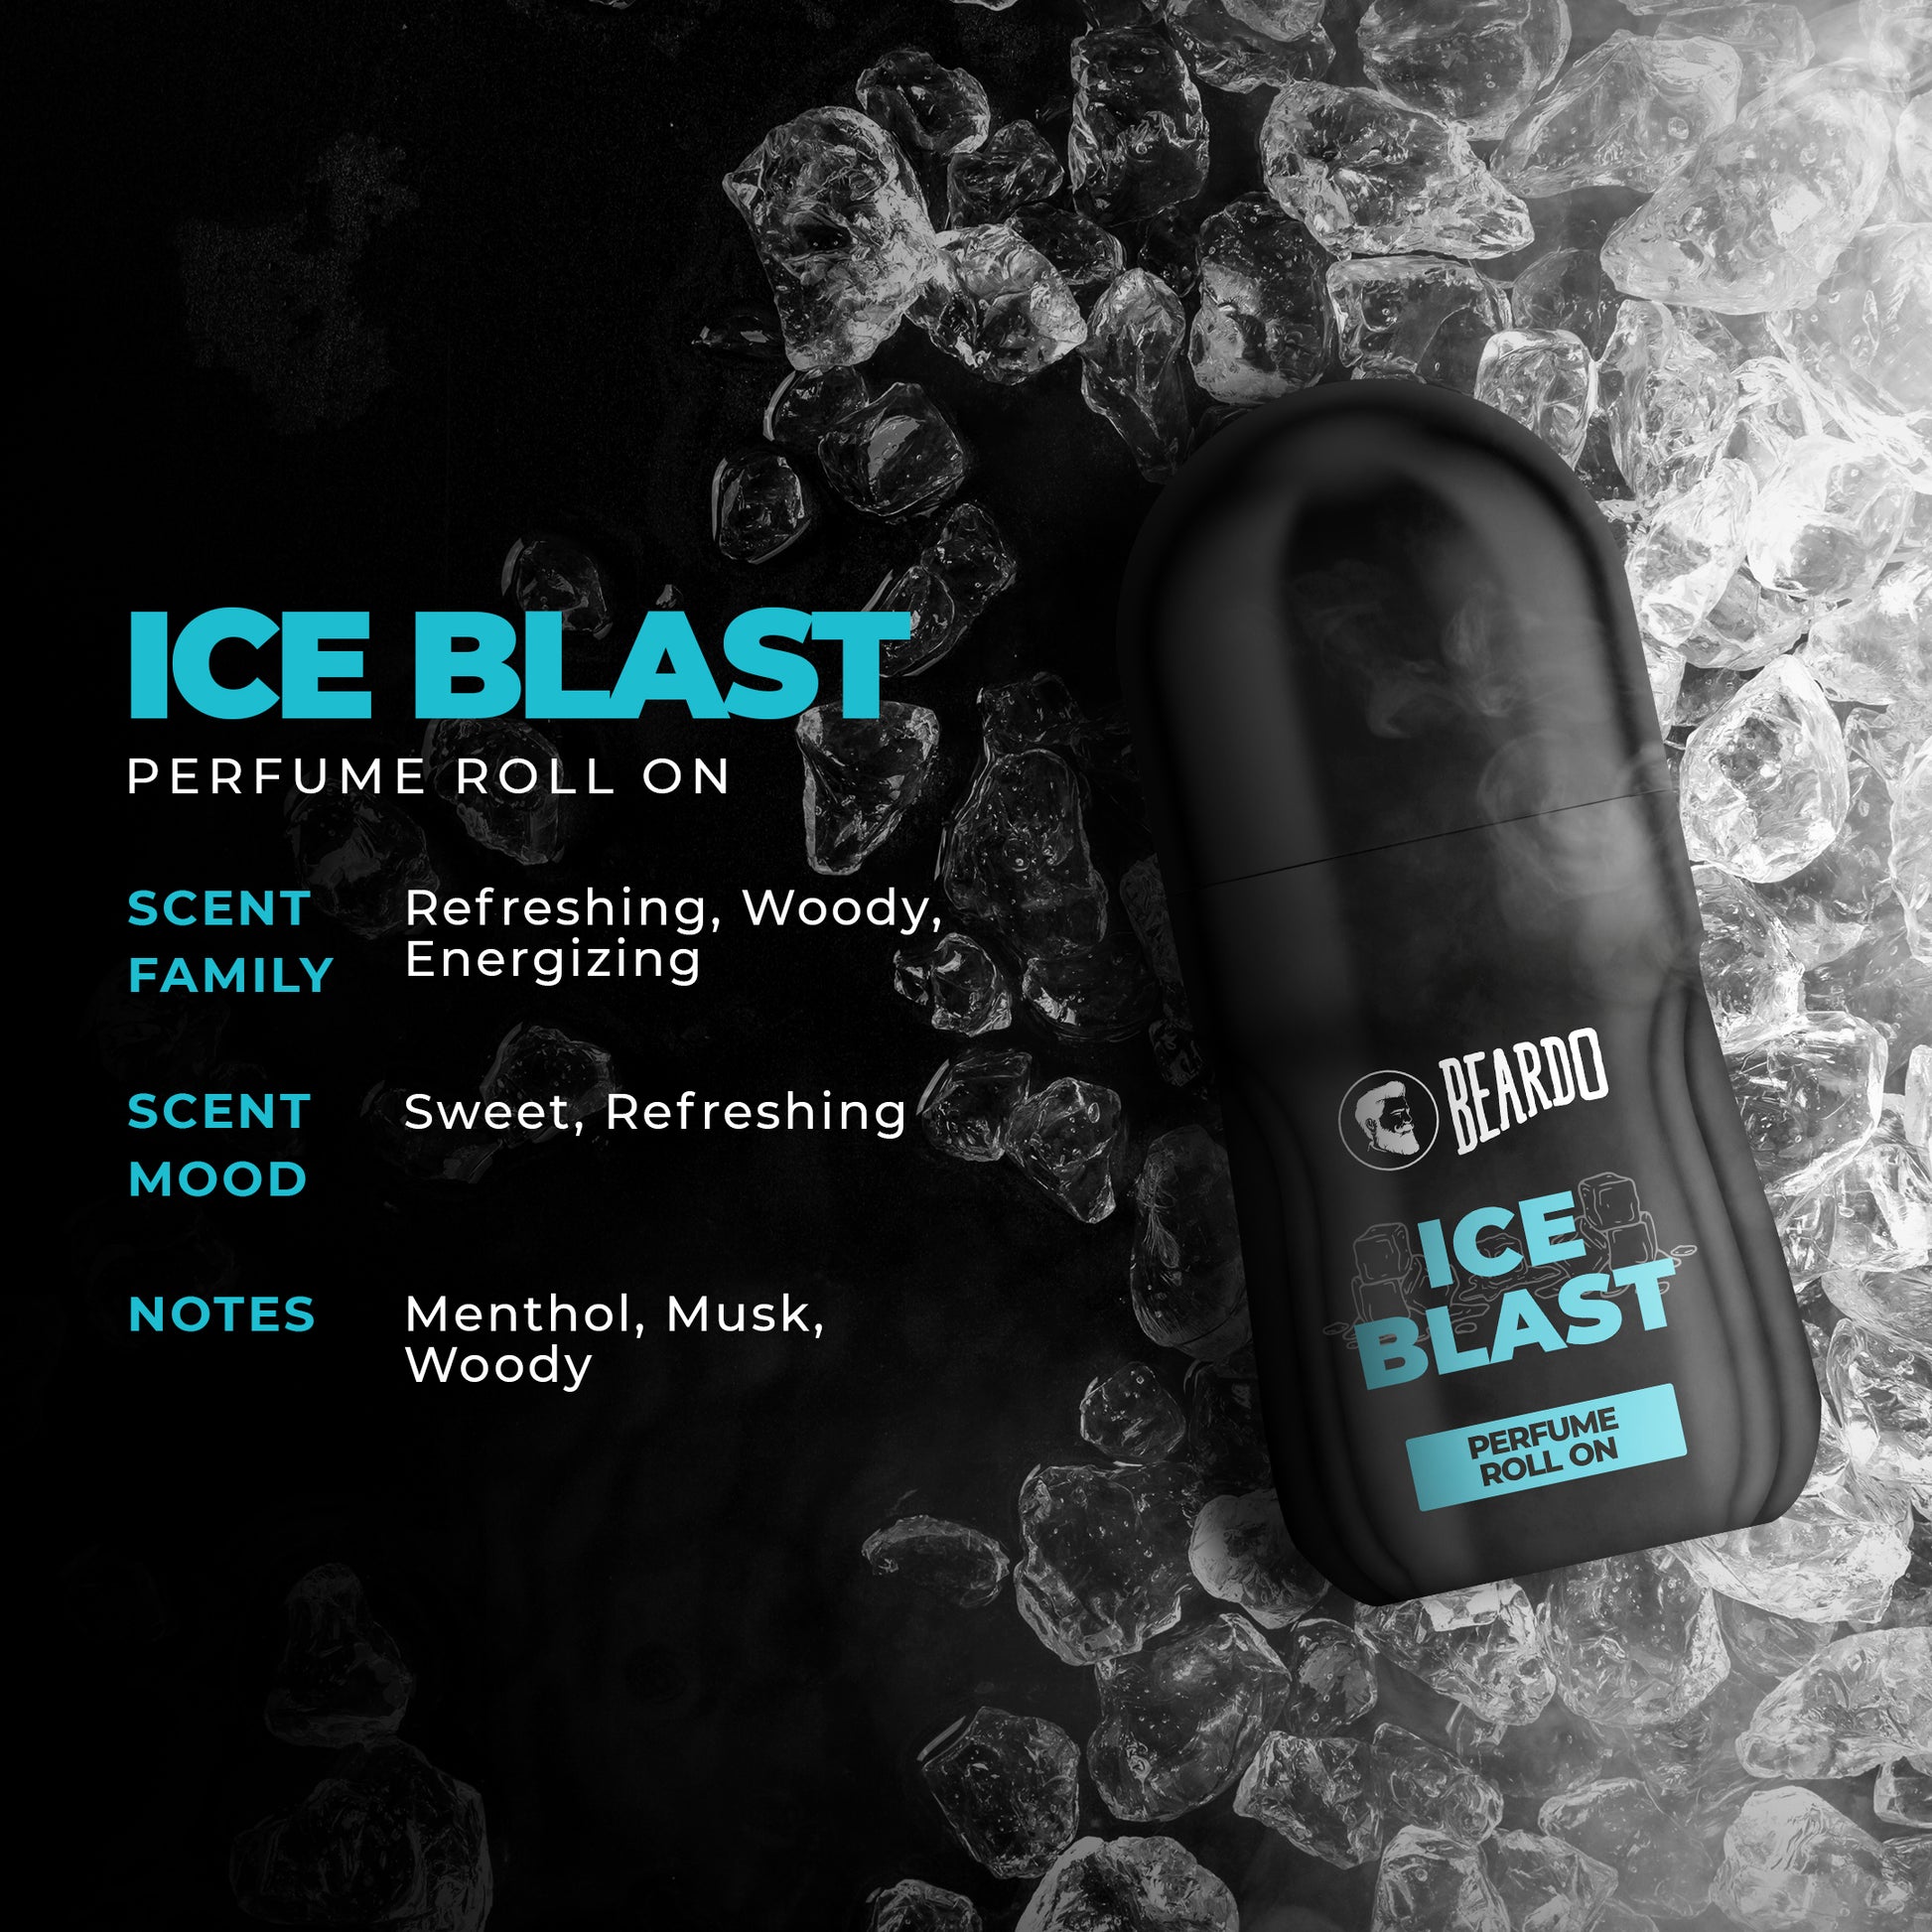 Beardo Ice Blast Perfume Roll On